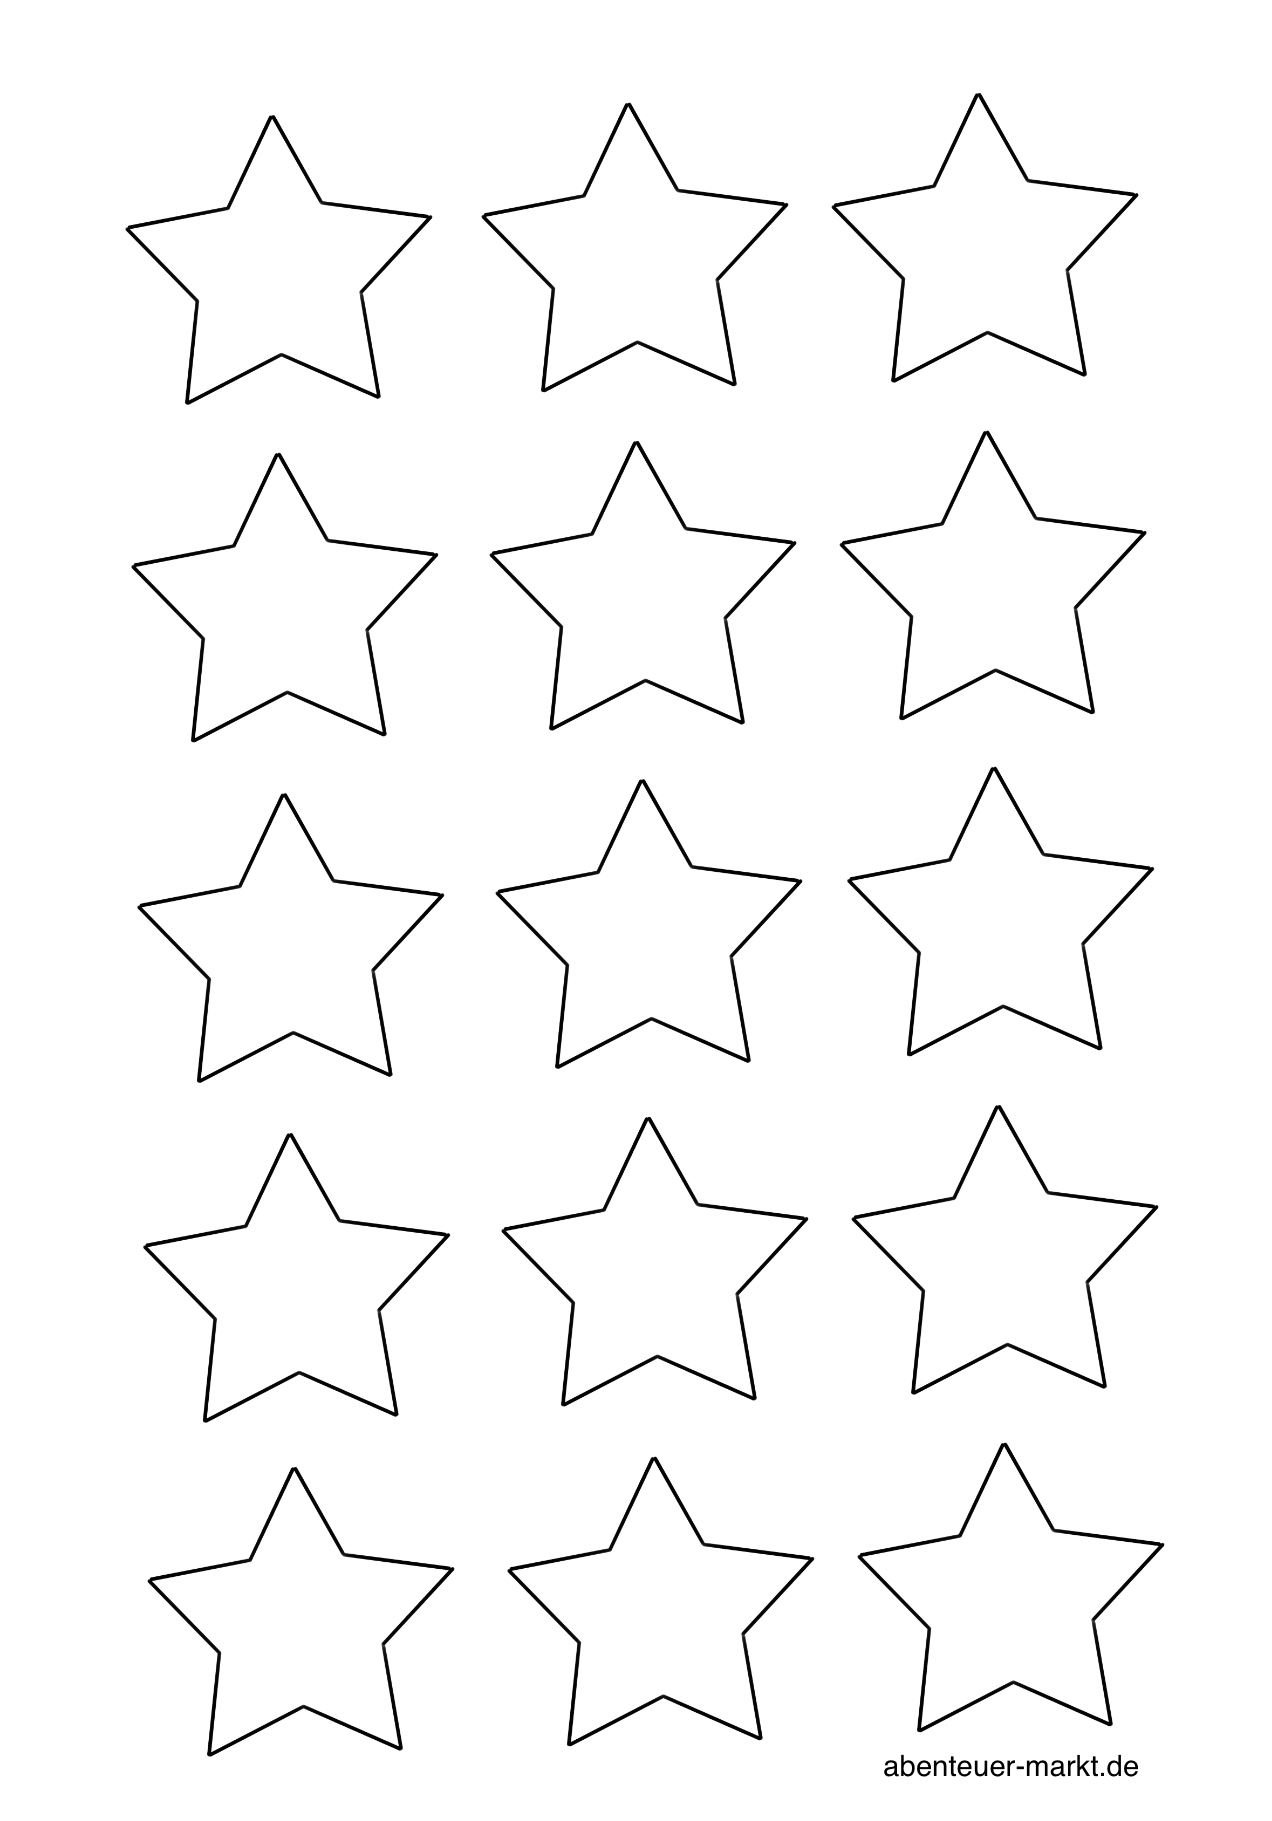 Bild zum Schritt 15 für das Bastel- und DIY-Abenteuer für Kinder: 'Solltet ihr eine Vorlage für Sterne benötigen, dann druckt euch...'